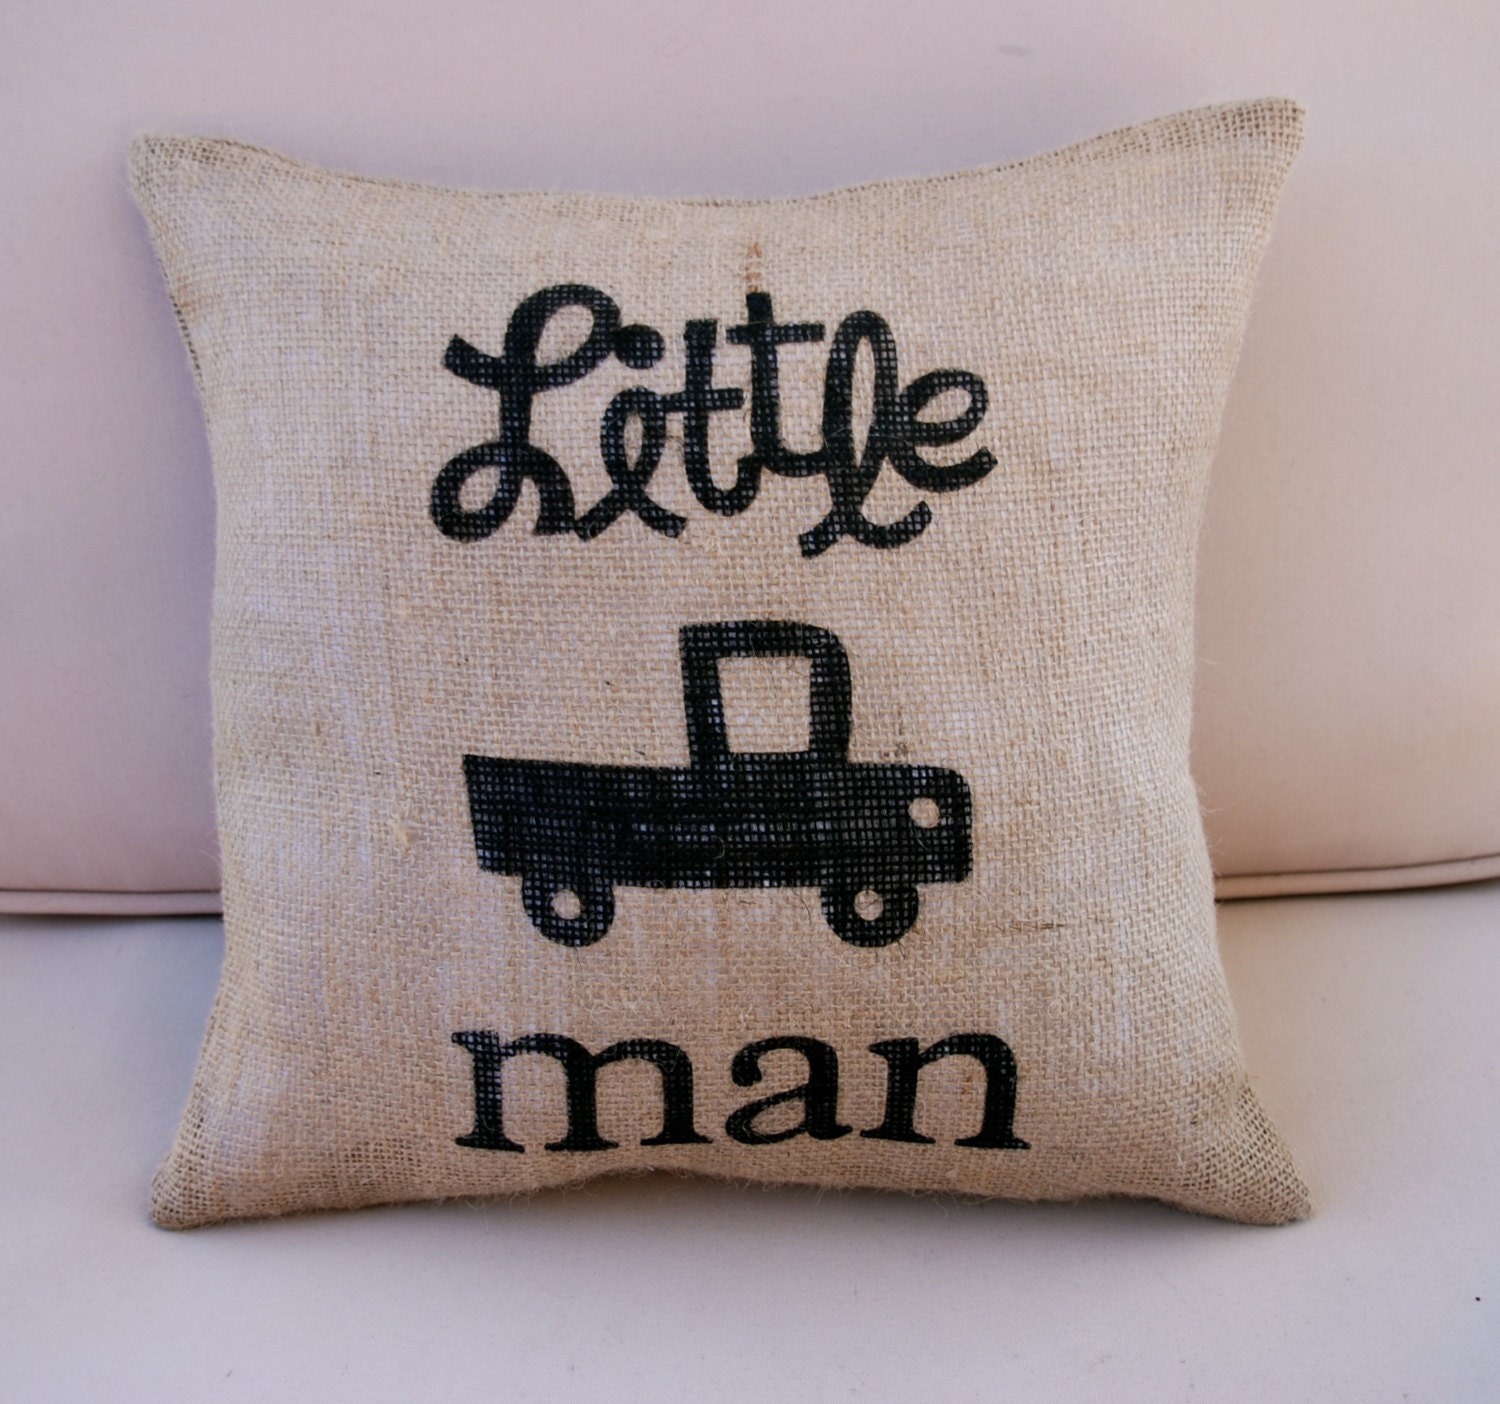 Little Man Burlap Pillow - Hand Painted Pillow - Baby's Room - Toss Pillow - Throw Pillow - Accent Pillow 14"x14"